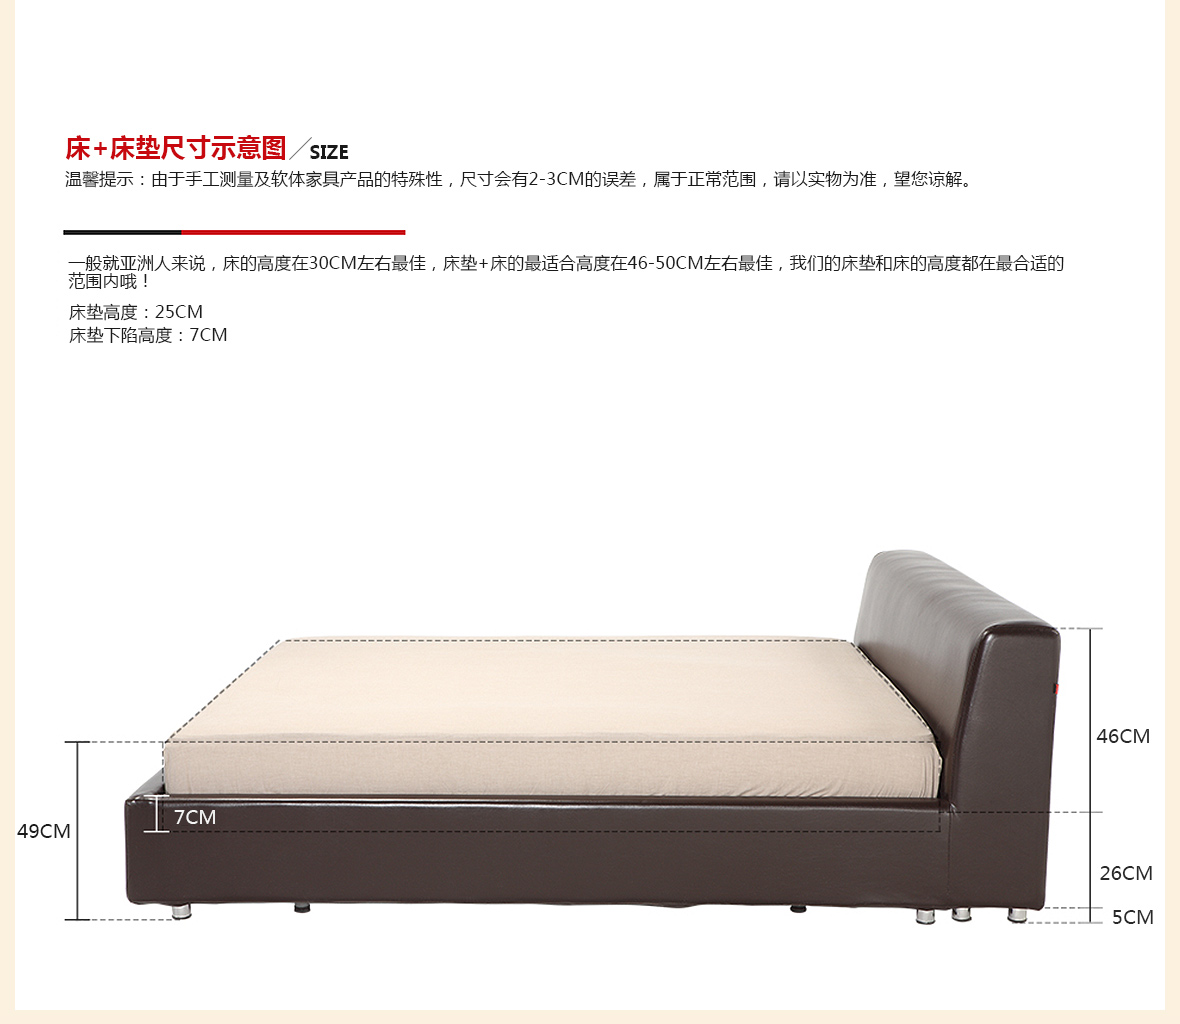 曲美家具 15LW-B3型号双人床 商品尺寸